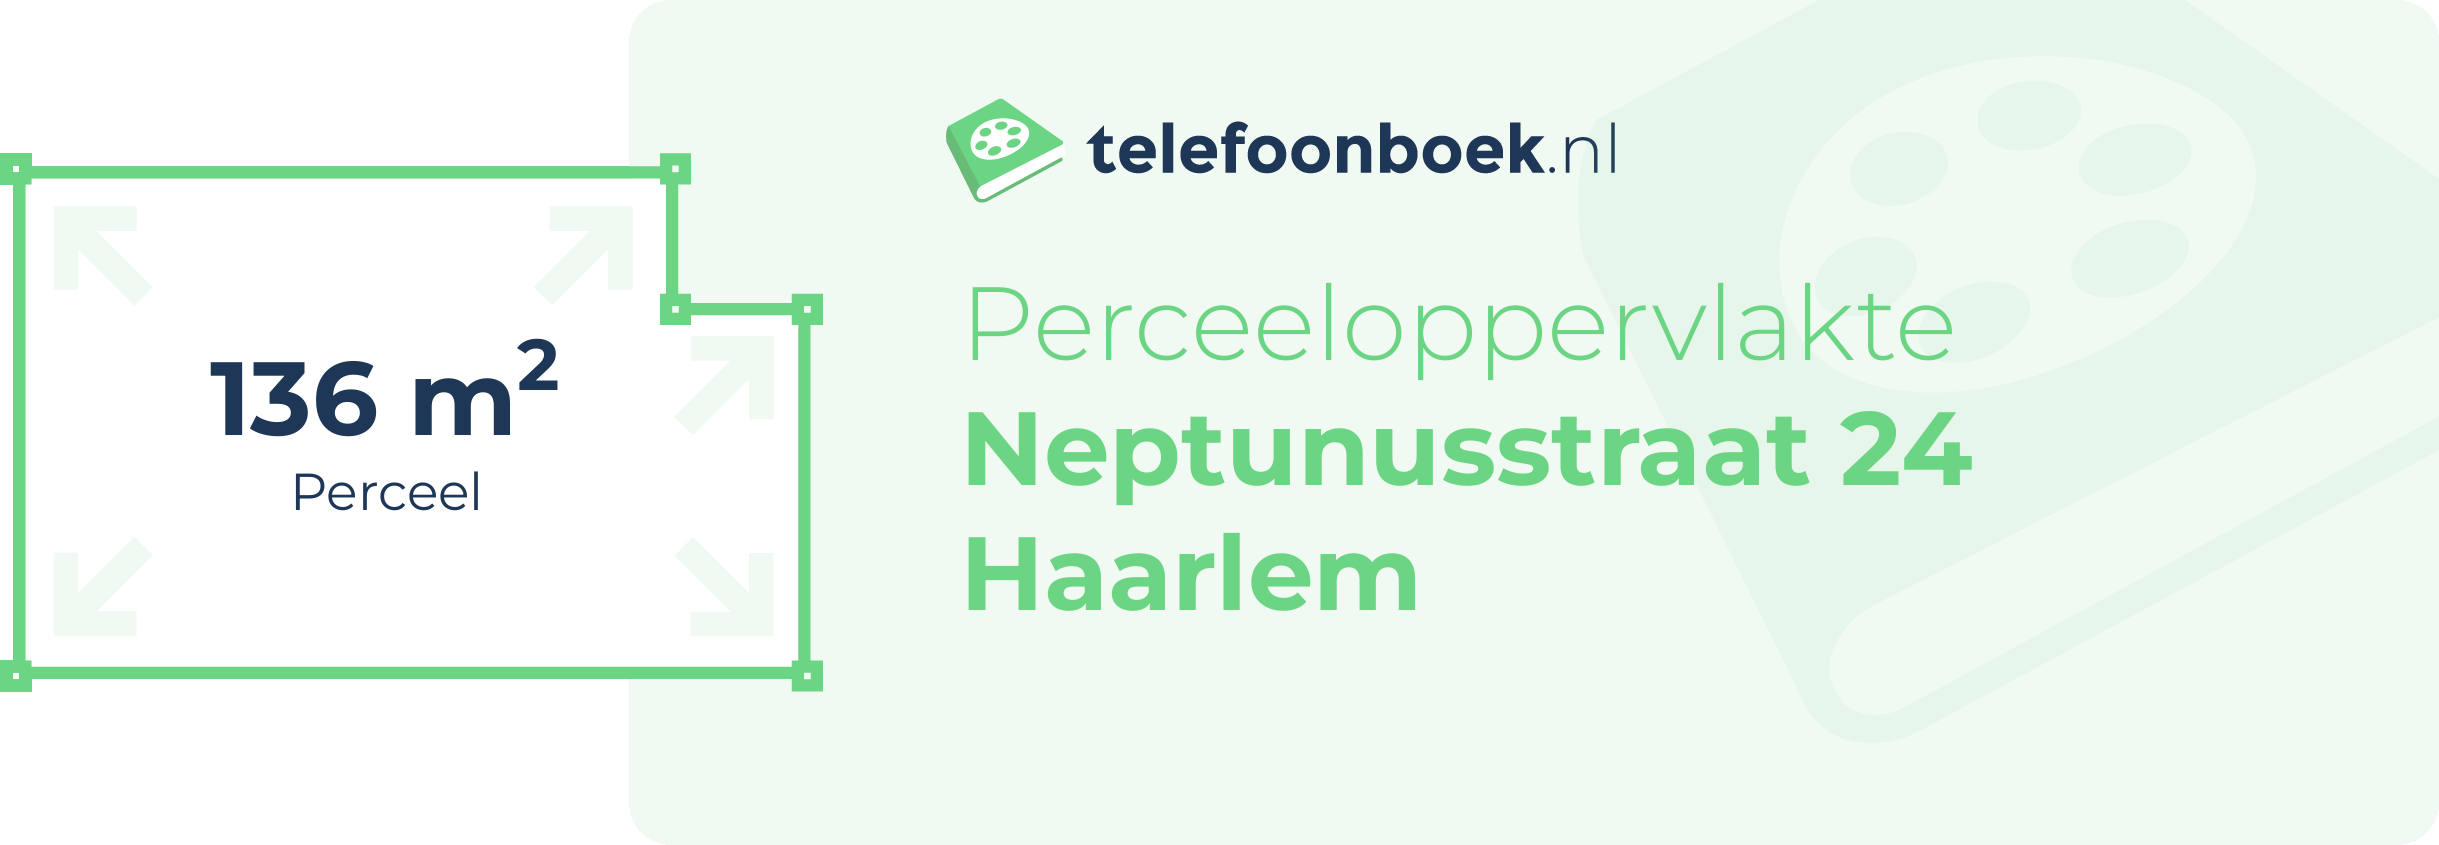 Perceeloppervlakte Neptunusstraat 24 Haarlem